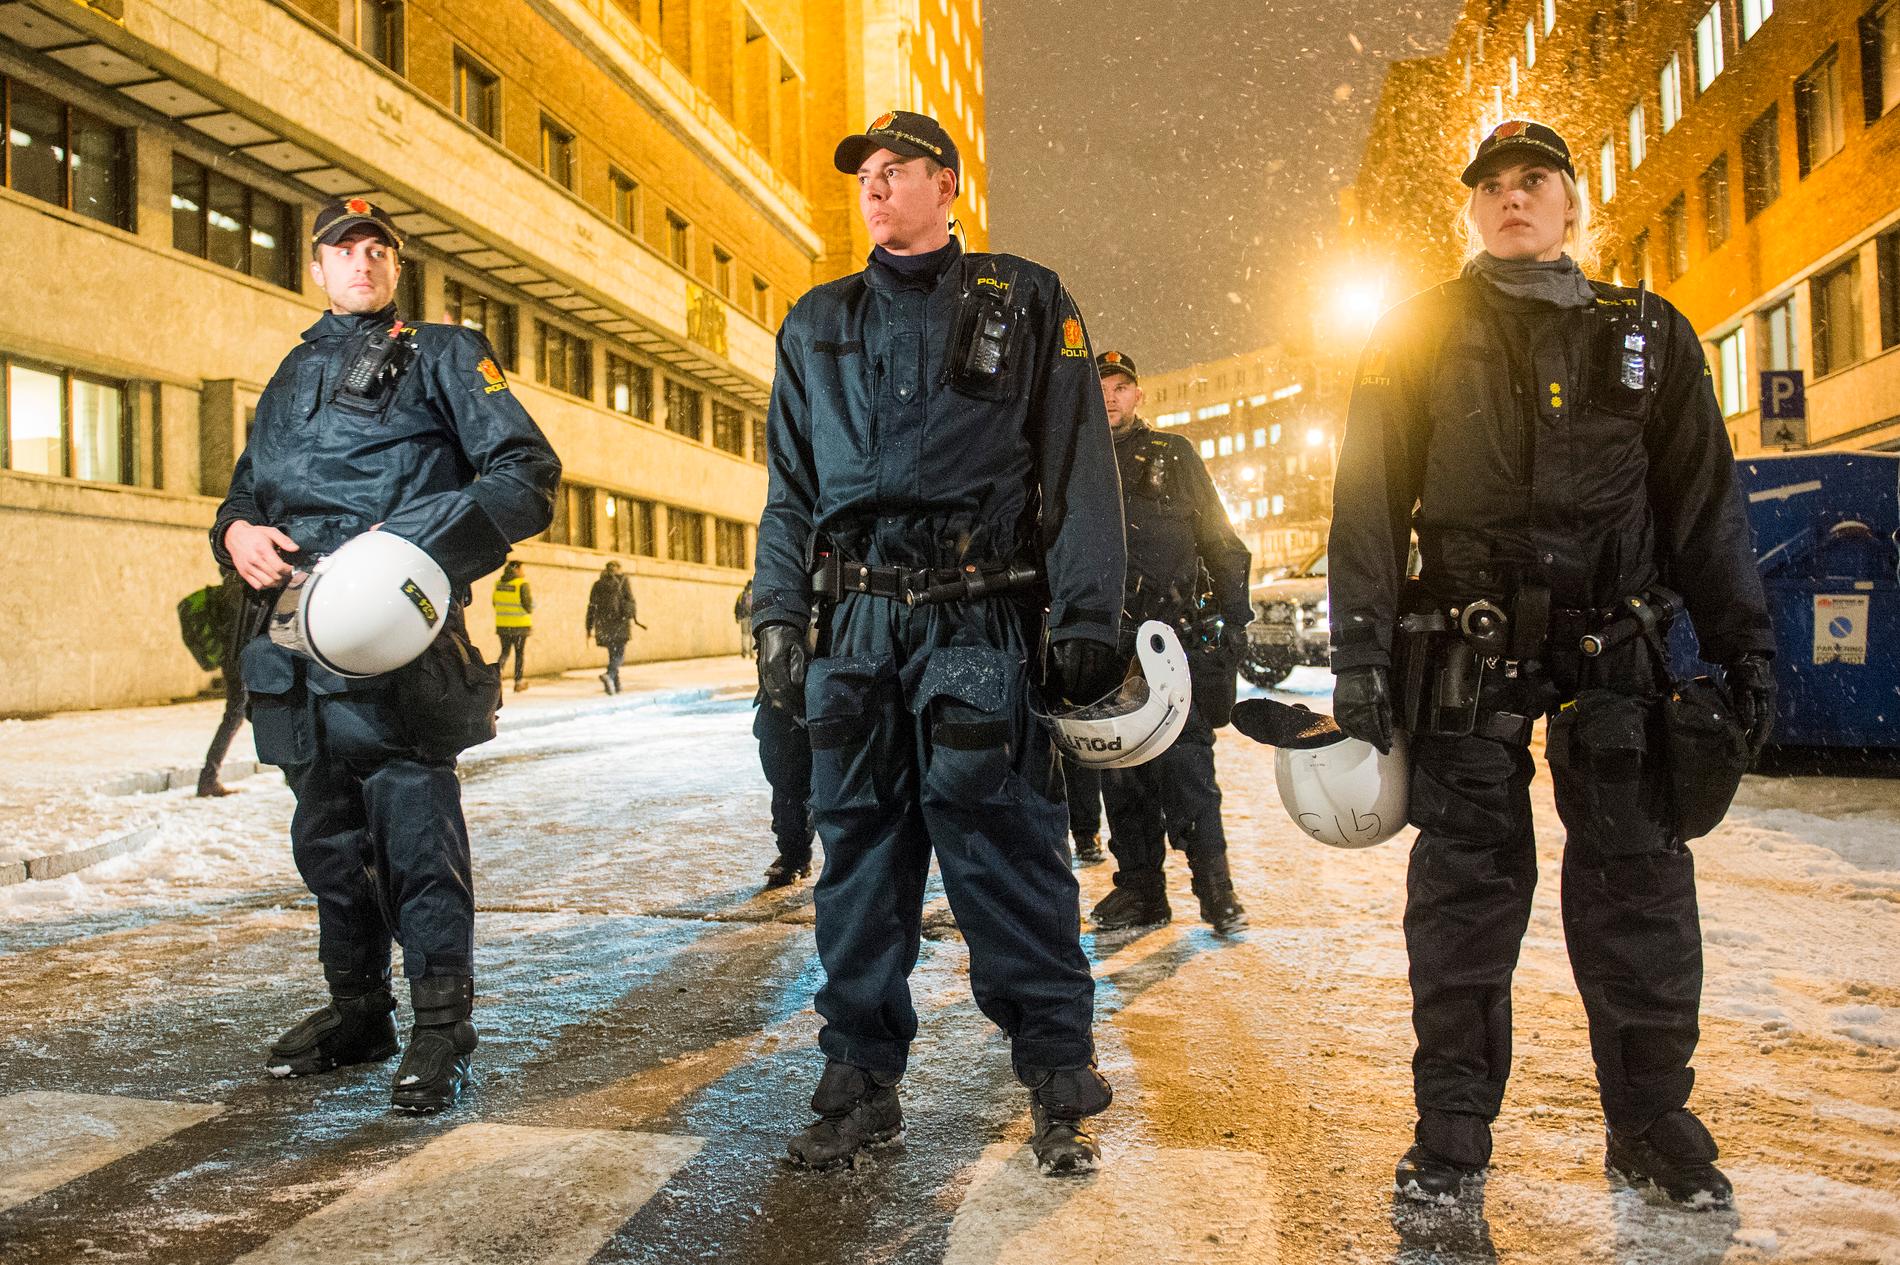 Politiet i Kristiansand overvåker kveldens demonstrasjon, selv om de håper på en rolig markering. Her fra Pegida-demonstrasjon i Oslo. Foto: NTB Scanpix.